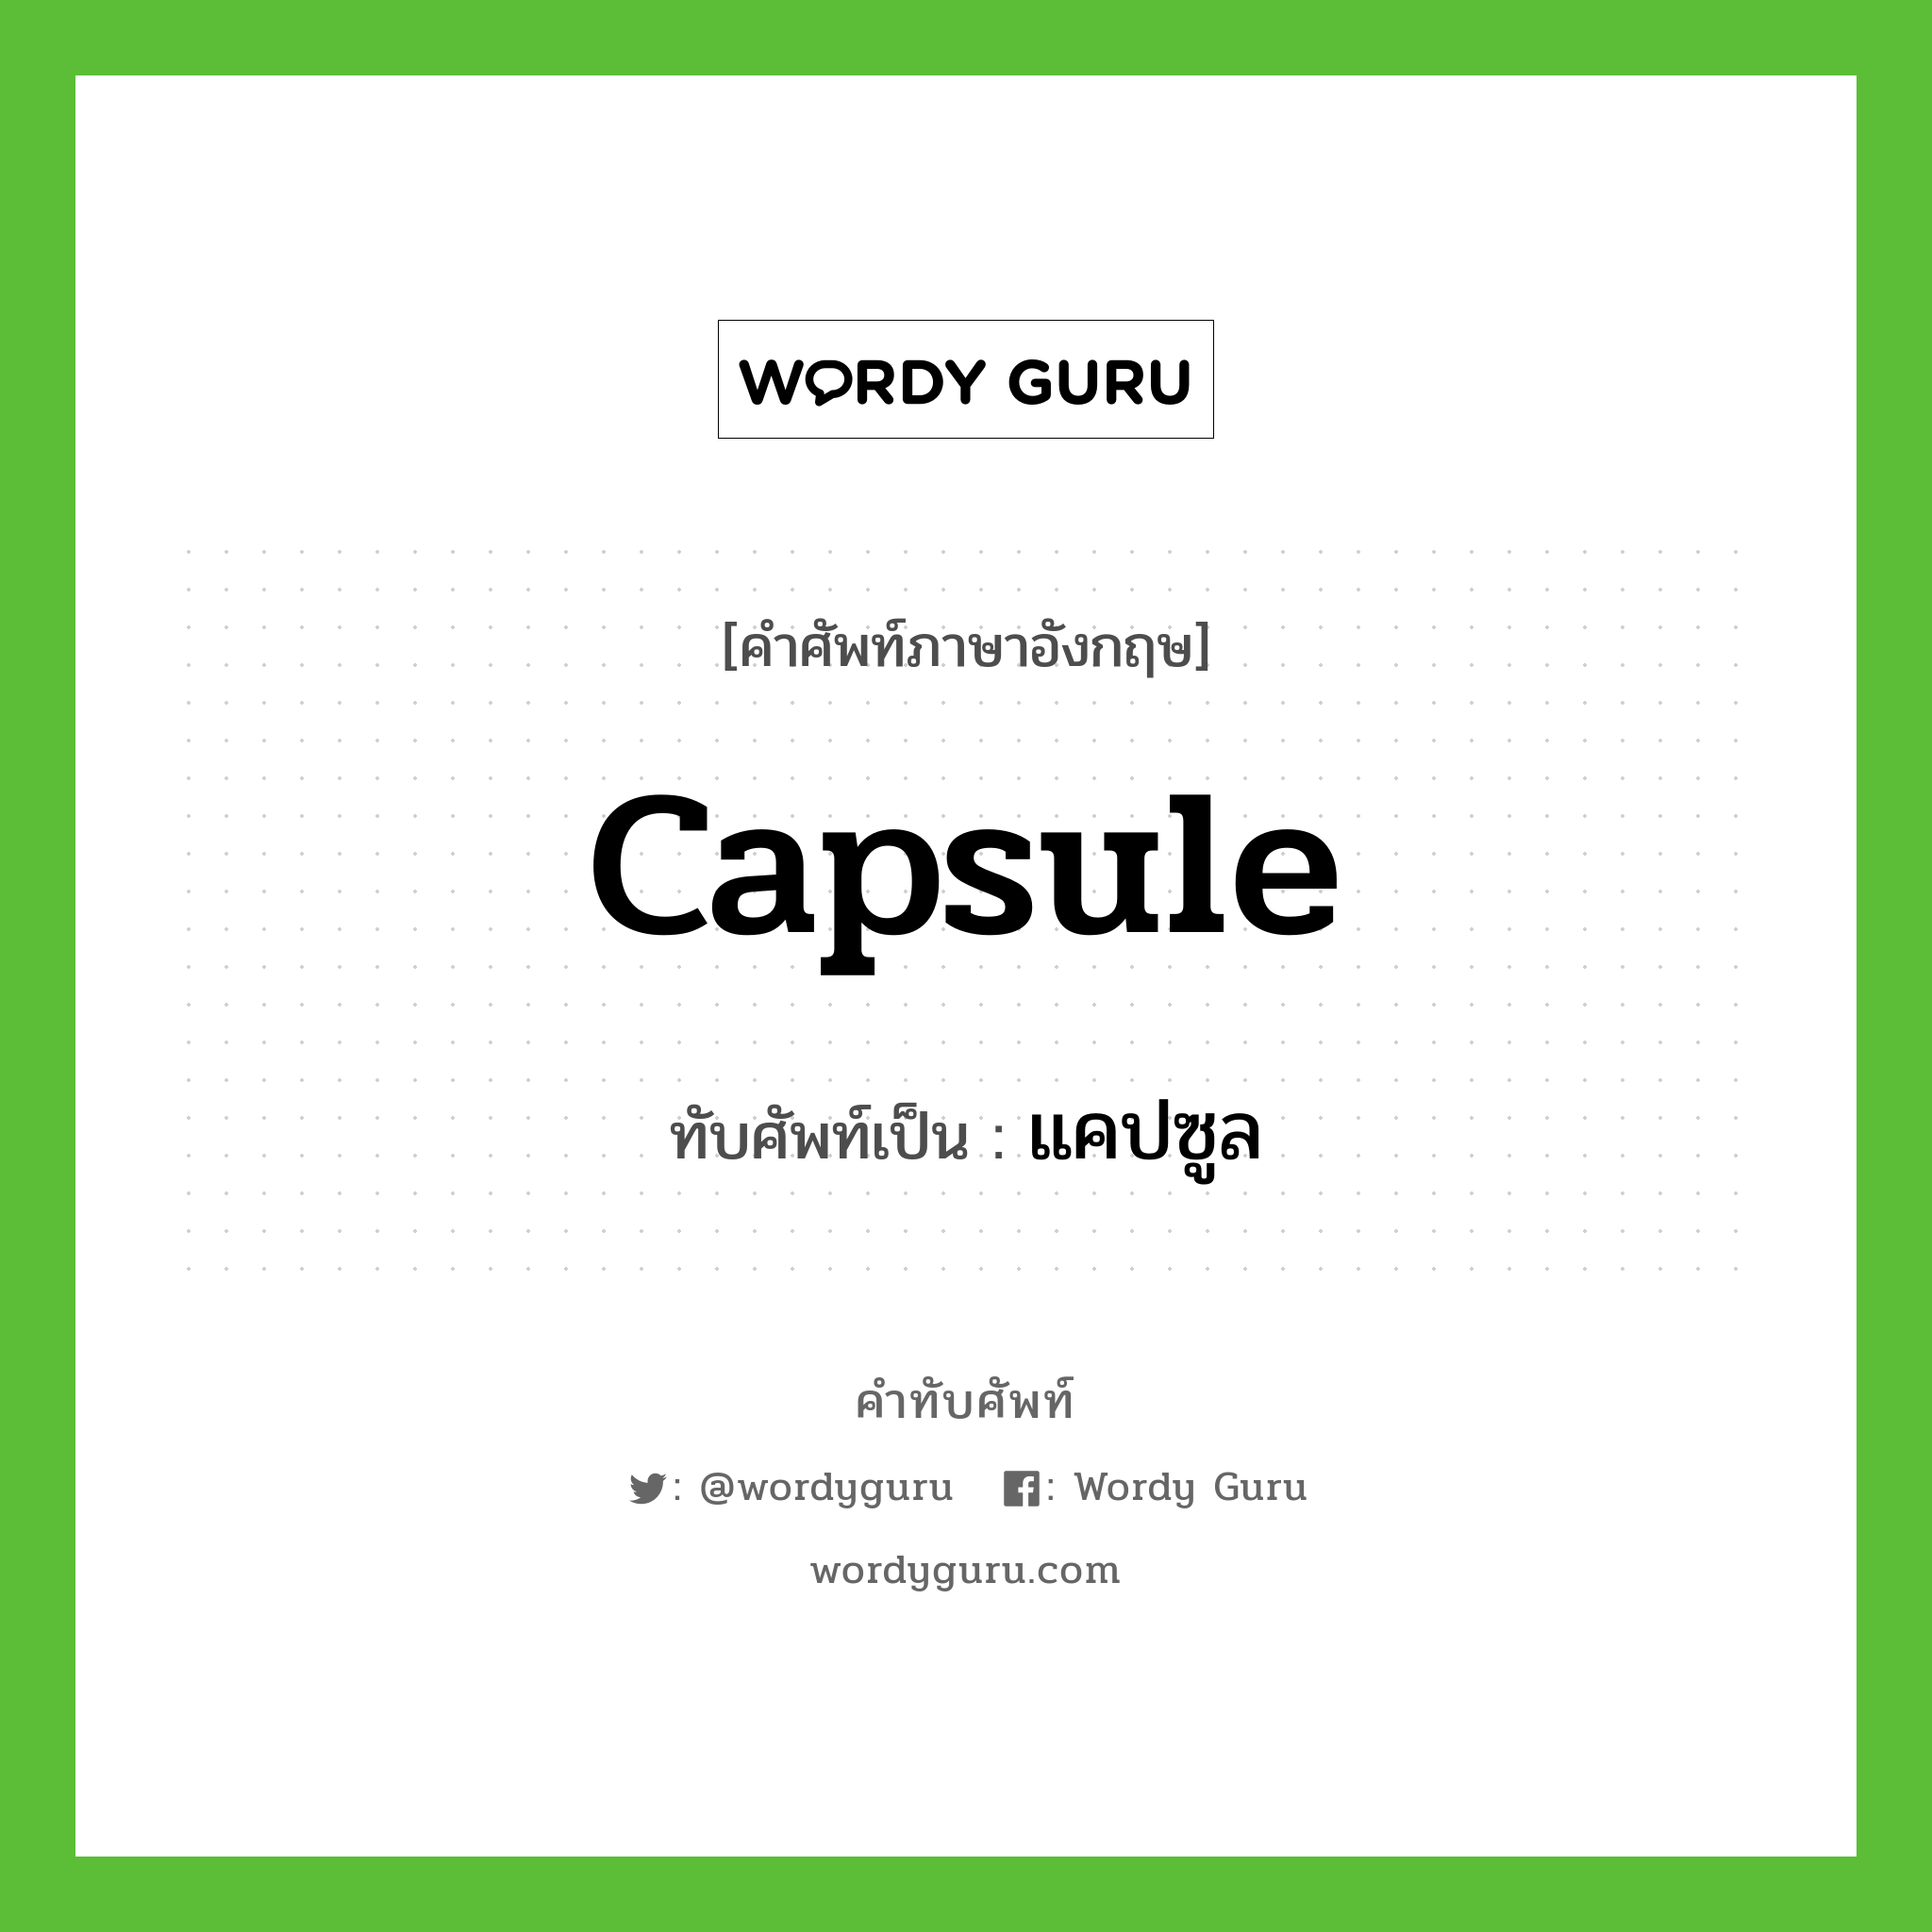 capsule เขียนเป็นคำไทยว่าอะไร?, คำศัพท์ภาษาอังกฤษ capsule ทับศัพท์เป็น แคปซูล